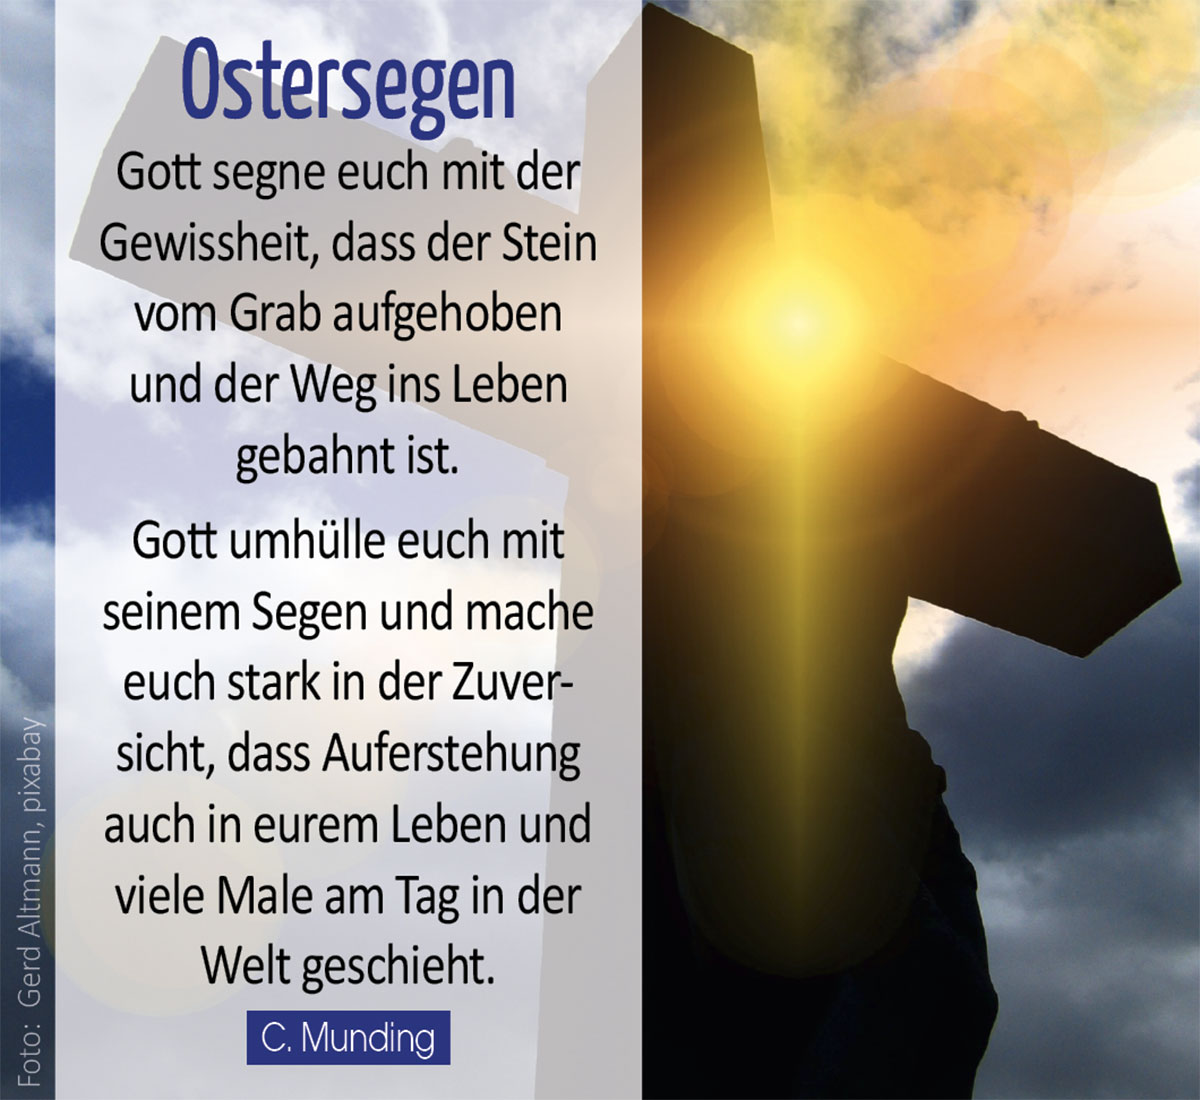 OSTERSEGEN - Kreuz und Osterlicht (Foto: Gerd Altmann, pixabay)